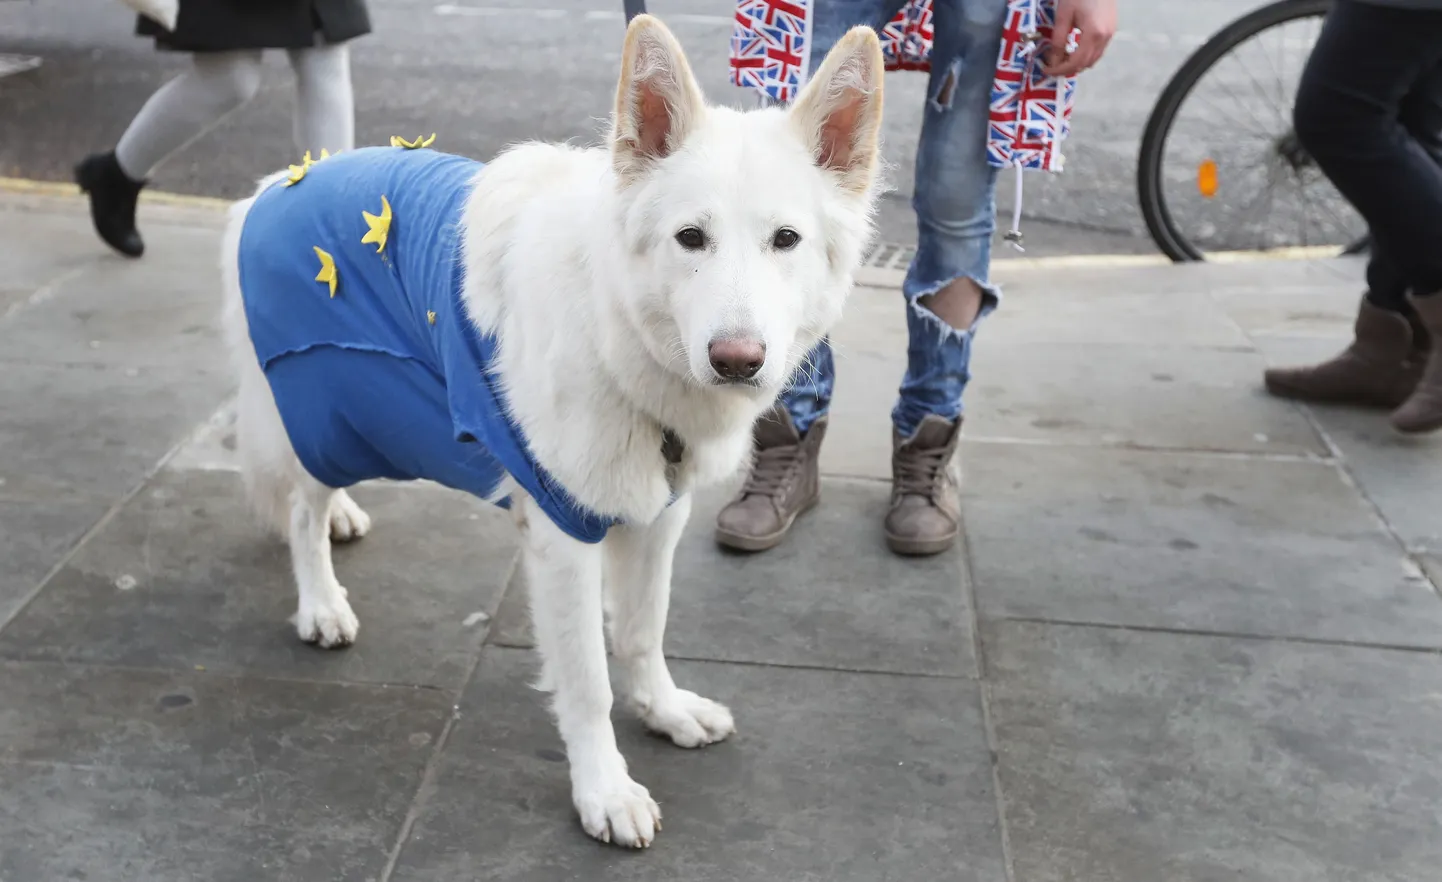 ELis jätkamist soovivad britid võivad isegi oma koerad meeleavaldustele tuua, kuid igatahes on selge, et Ühendkuningriigi eesistujakoha tuleval aastal peab ära täitma Eesti.